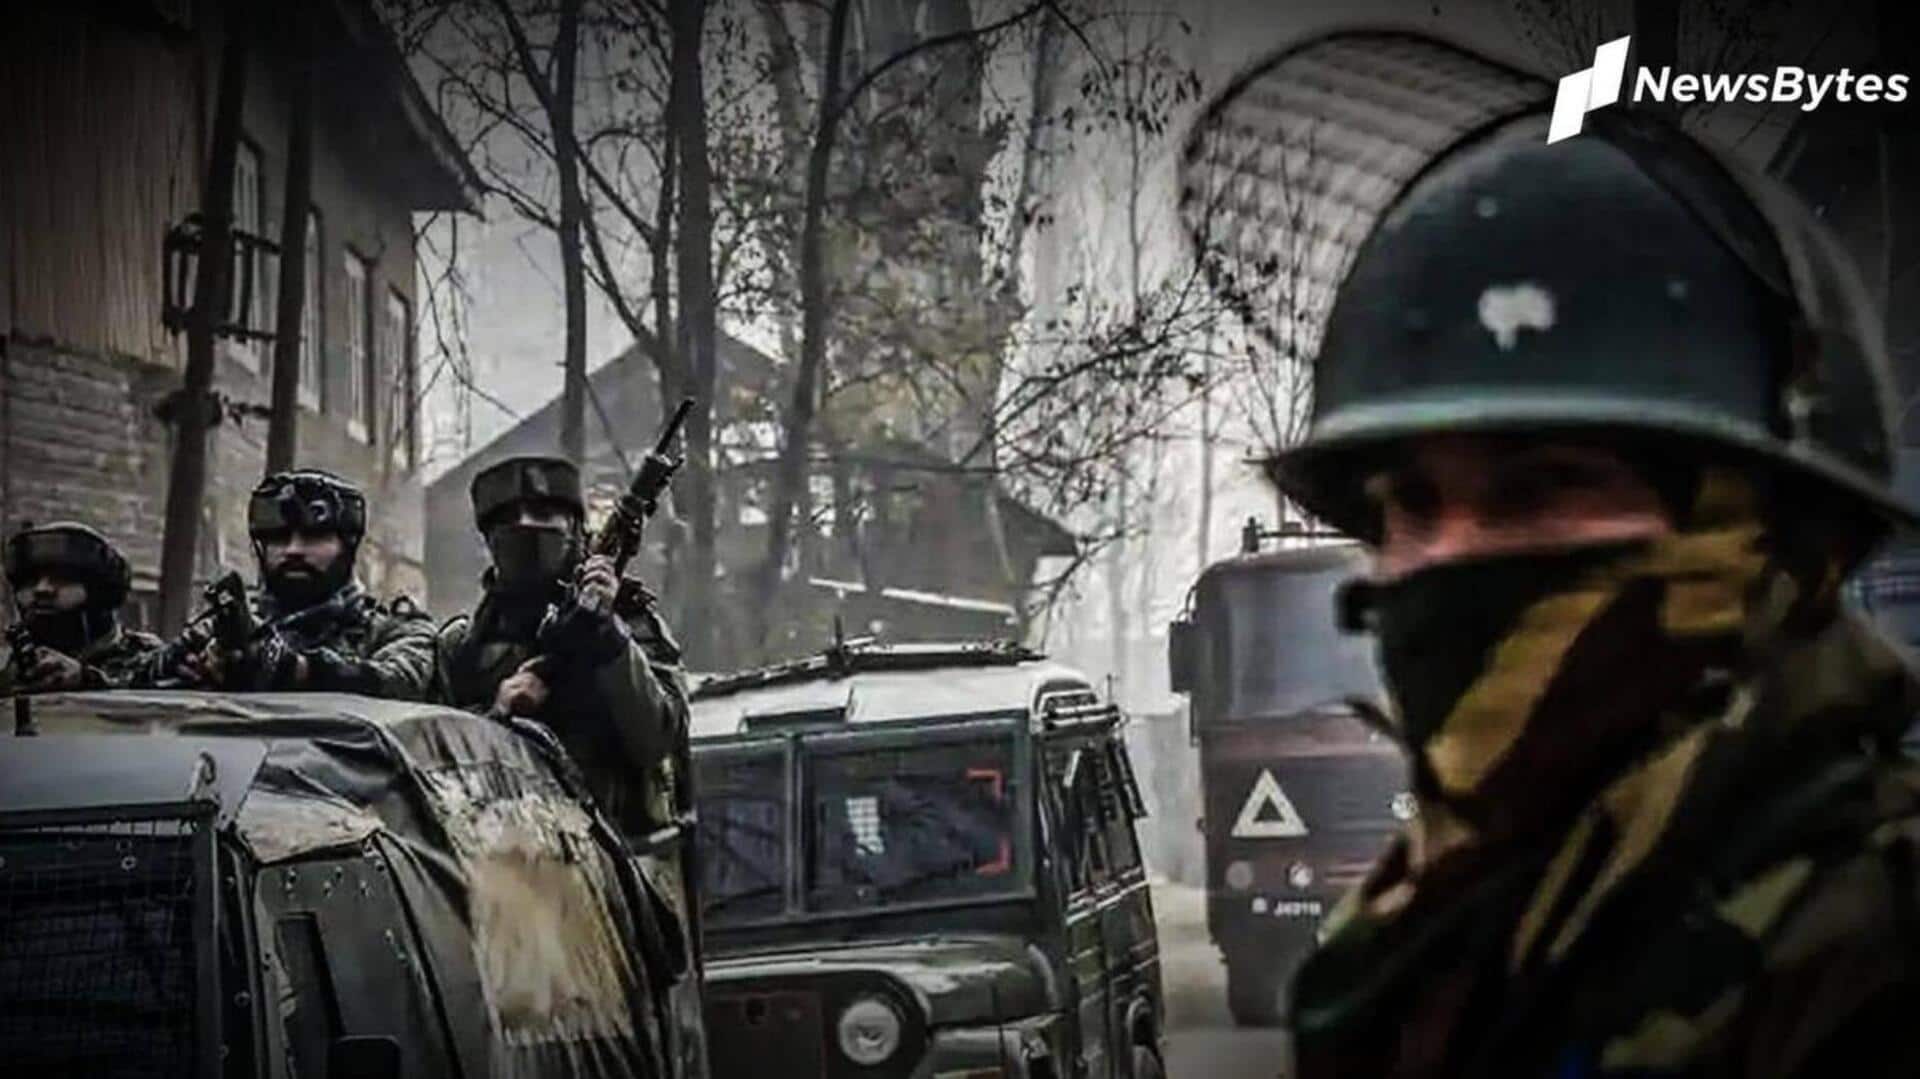 जम्मू-कश्मीर: बांदीपोरा में आतंकियों और सुरक्षा बलों के बीच मुठभेड़, 2 जवान घायल